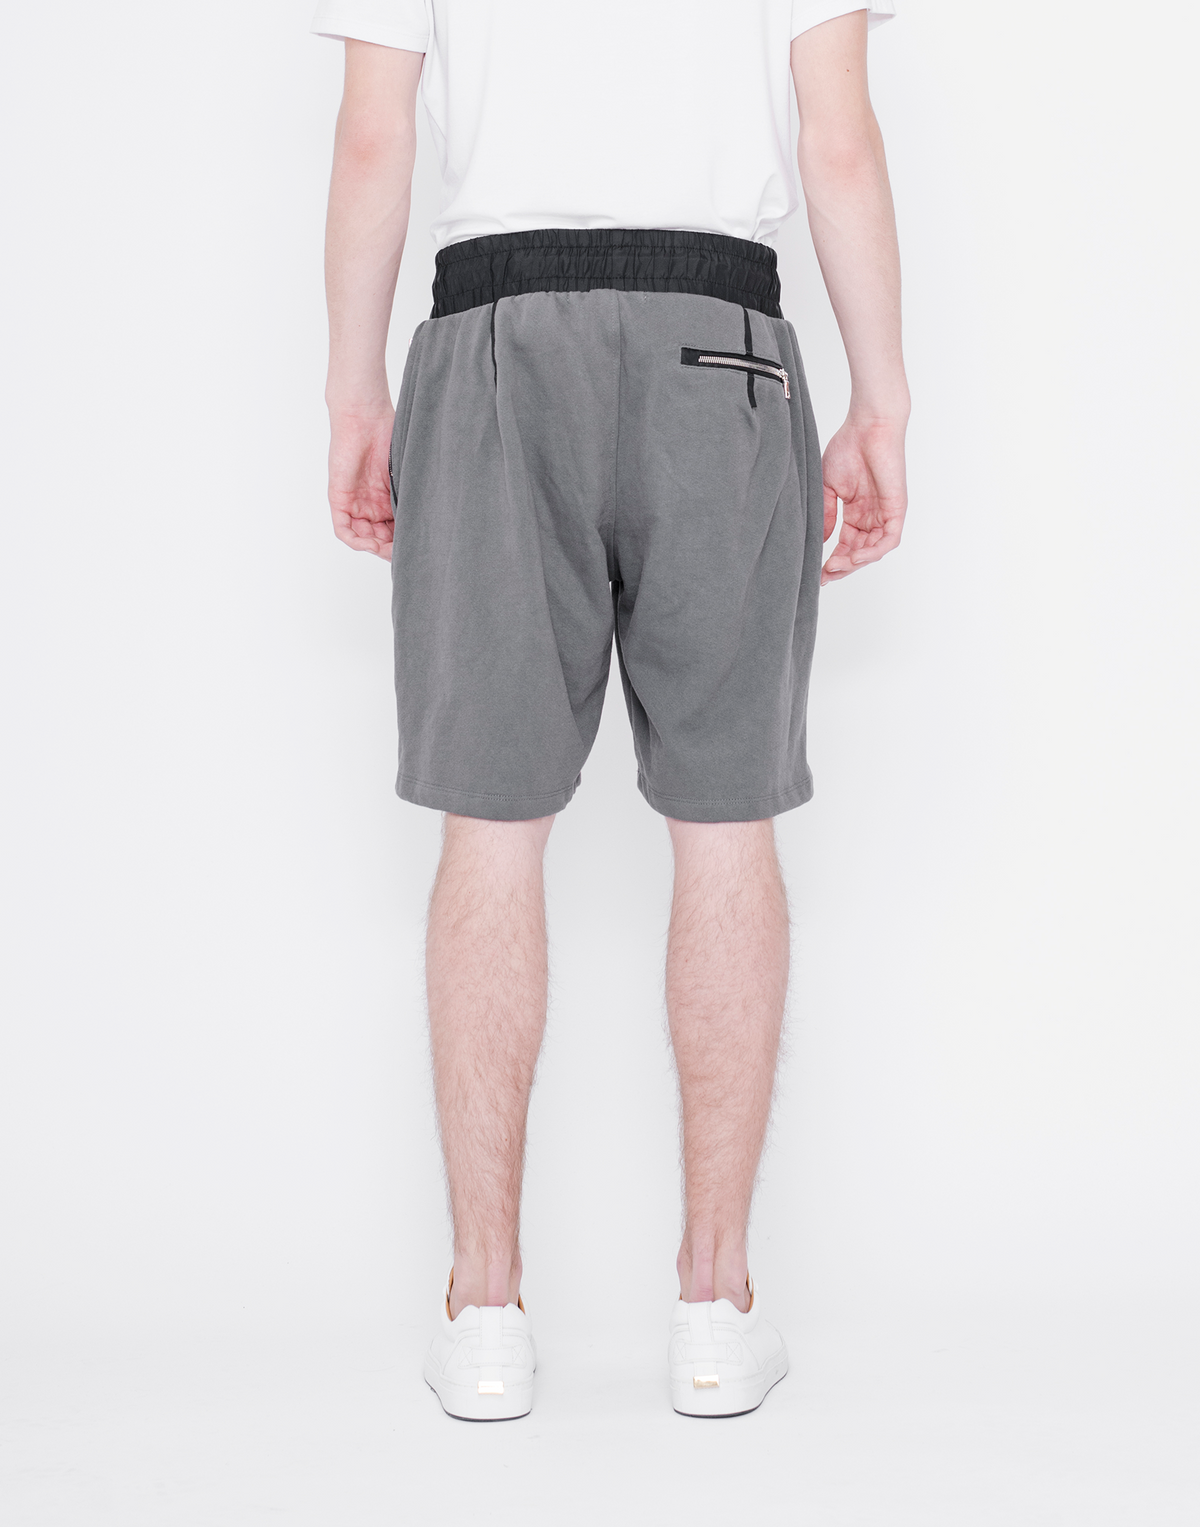 Mercer Shorts- SLATE